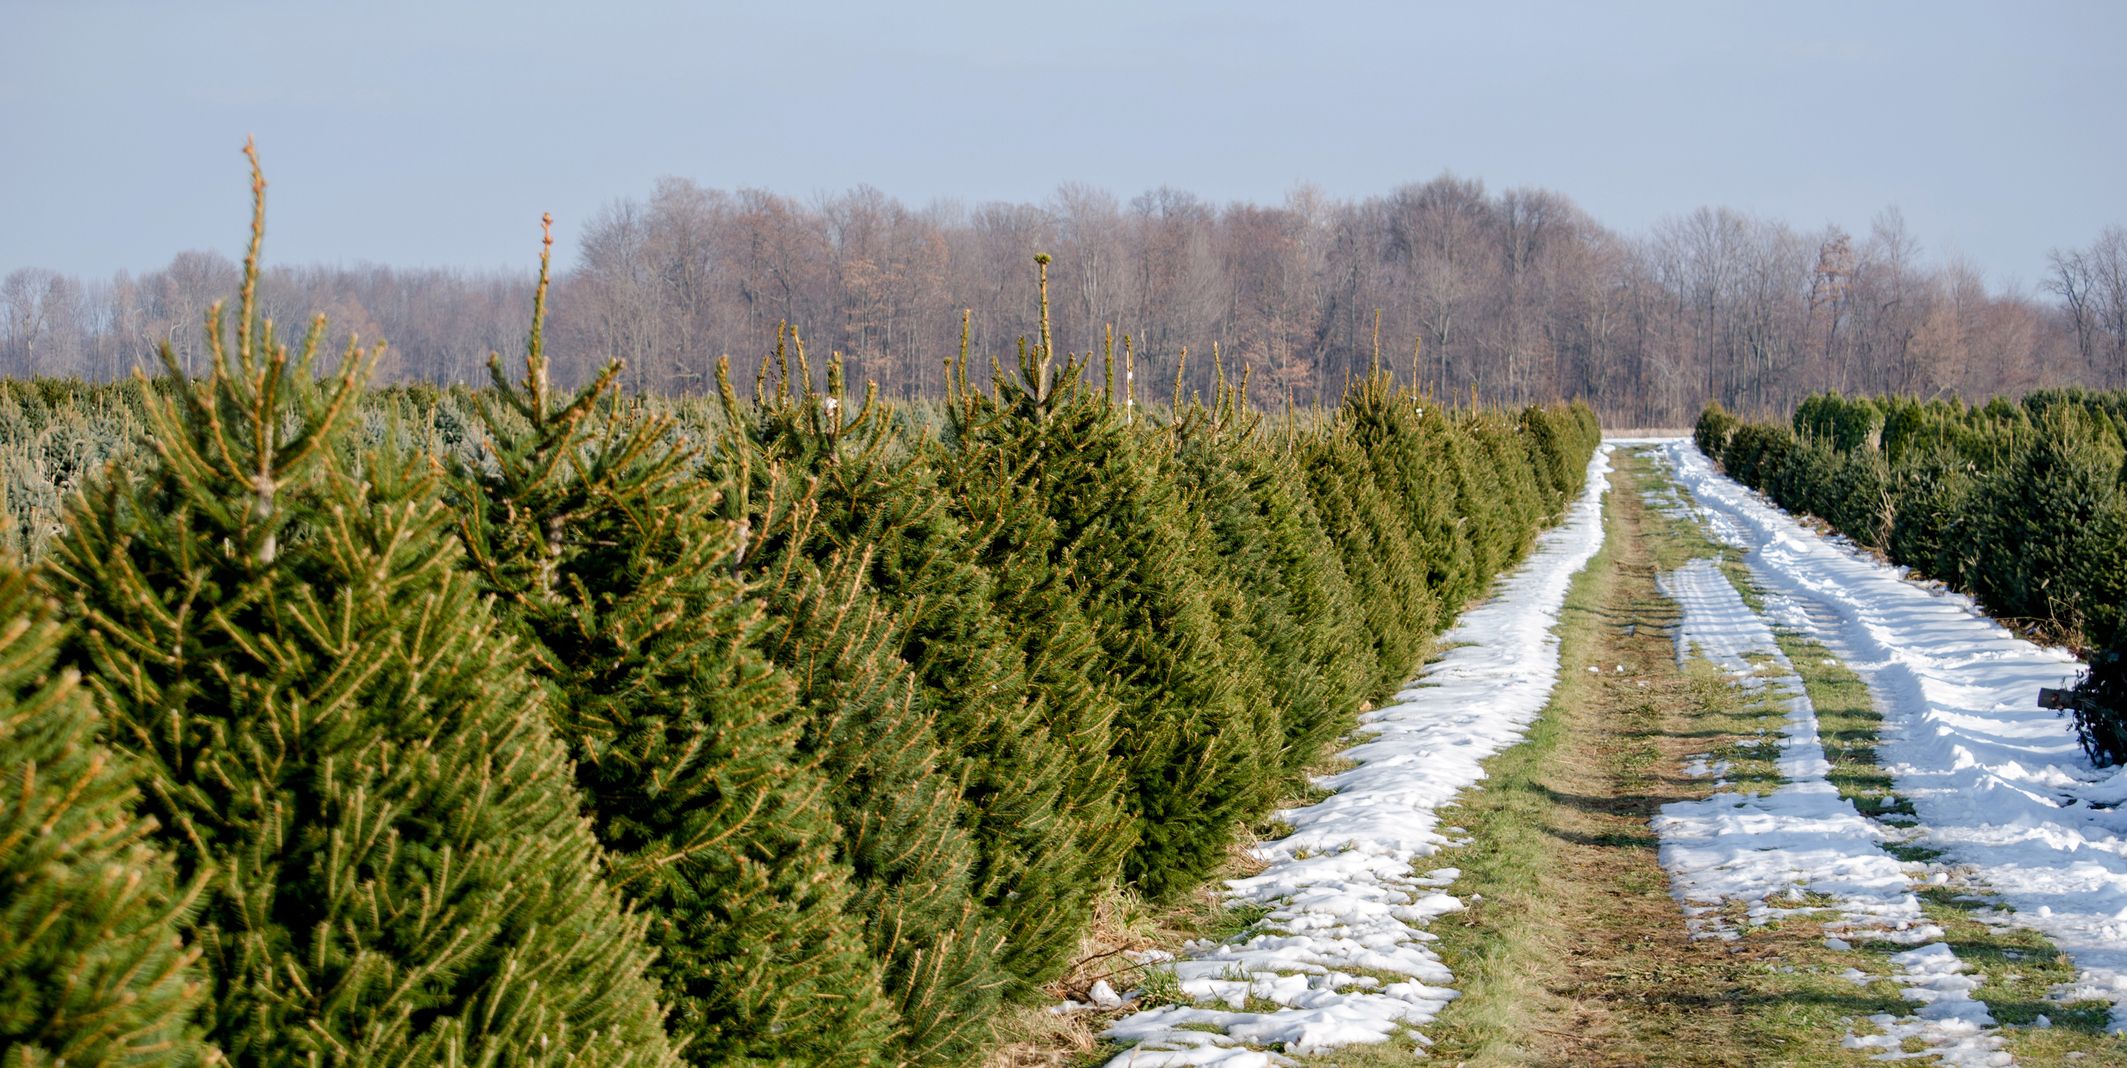 christmas tree farm images